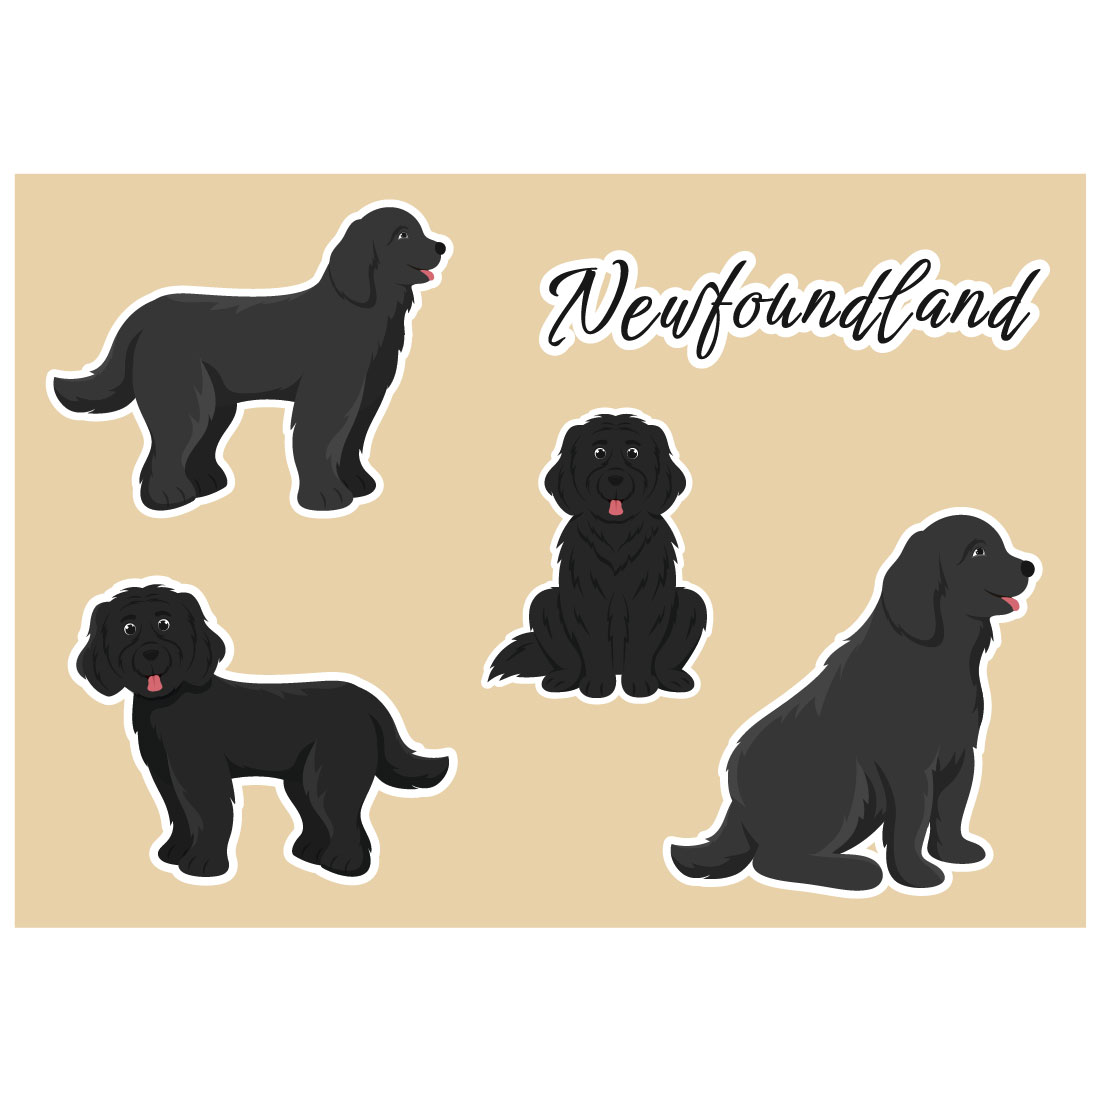 Newfoundland Dog Illustration cover image.